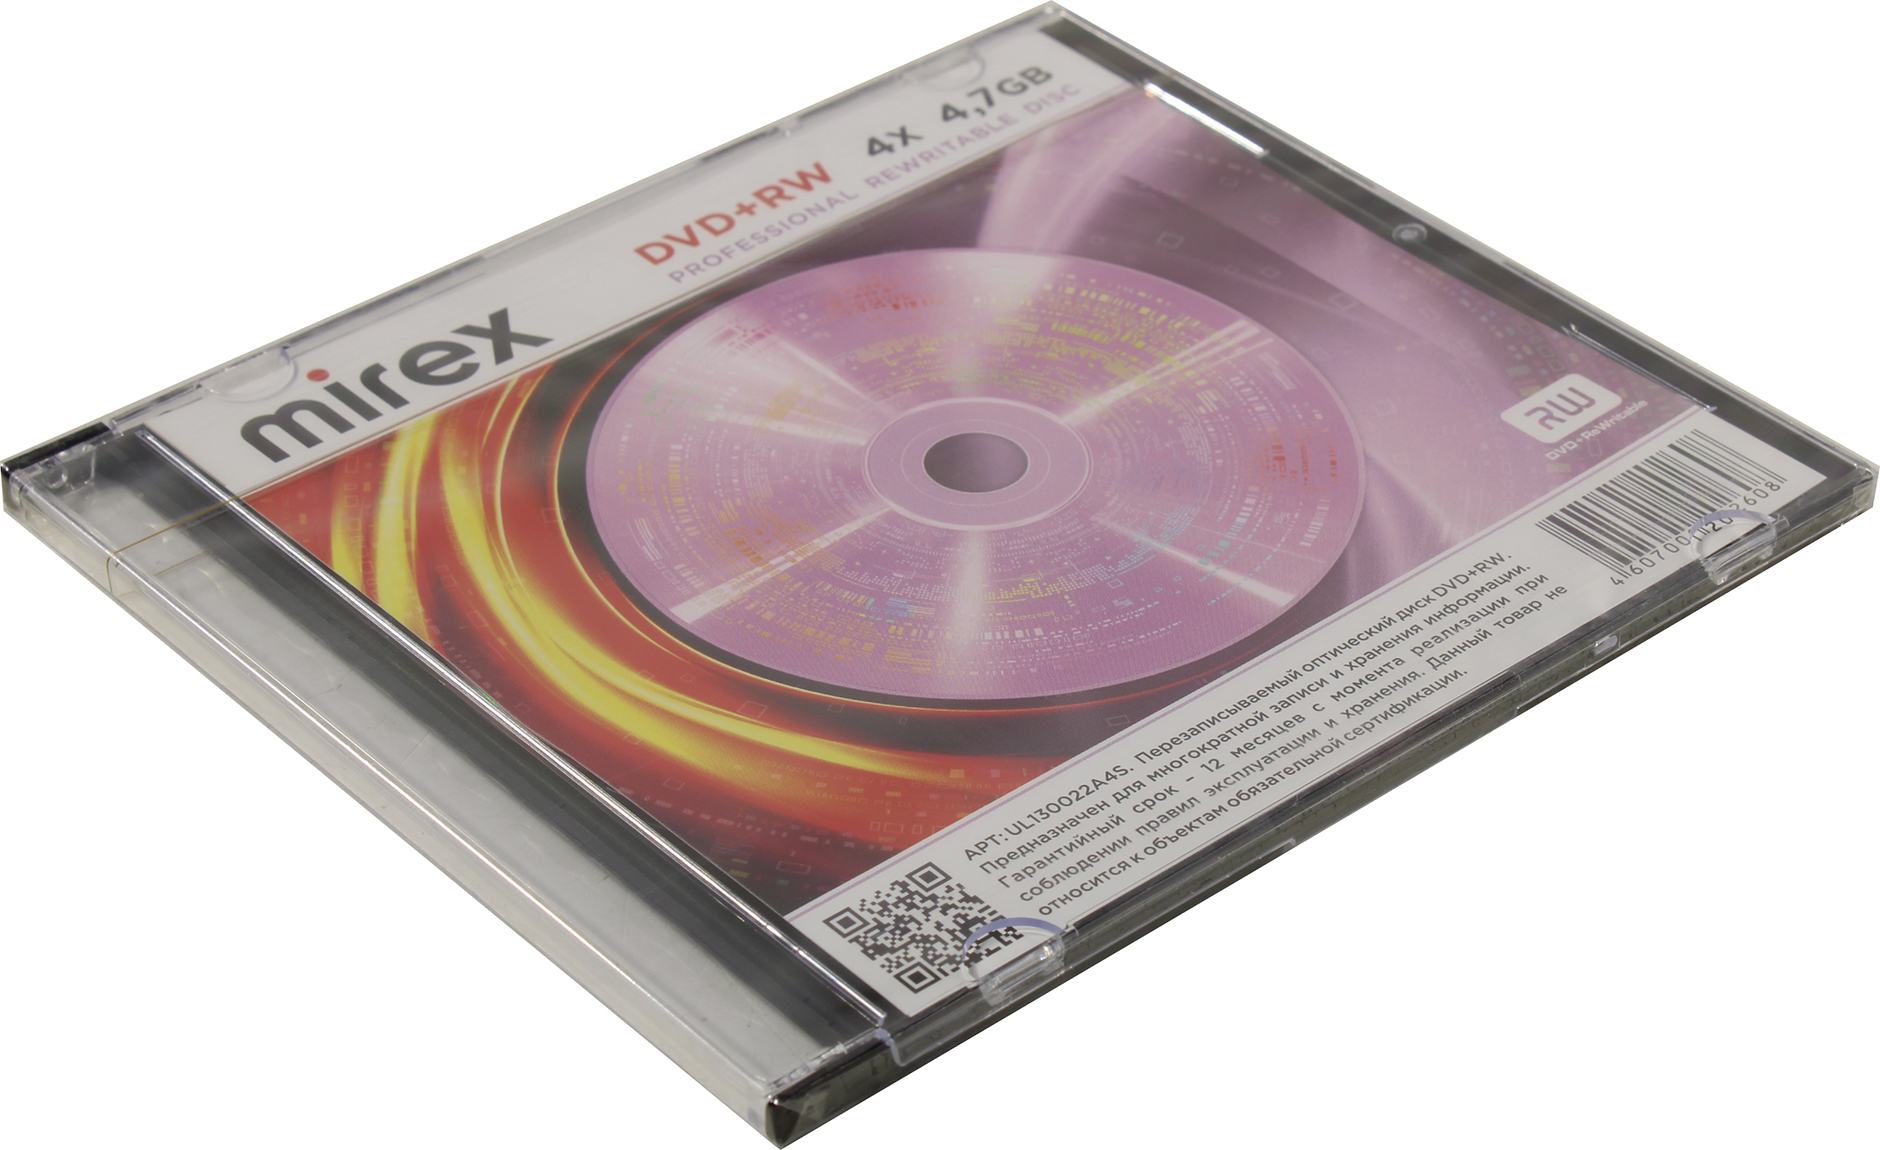 Диск Mirex DVD+RW, 4.7Gb, 4x, Jewel Case, 1 шт (202608) - фото 1